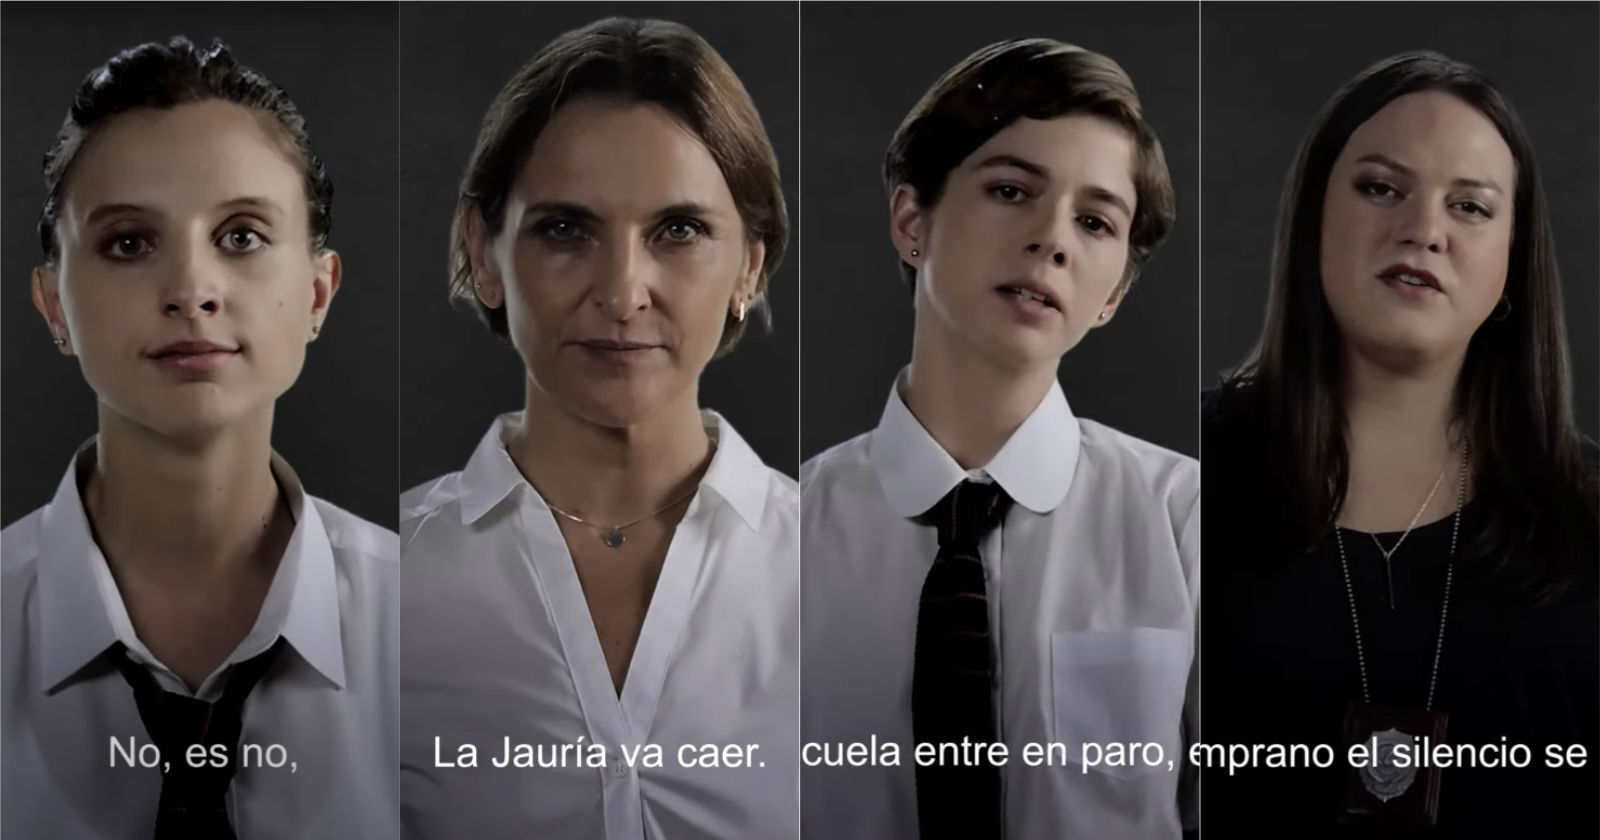 La Jauría: serie chilena inspirada en el caso de La Manada estrena ...